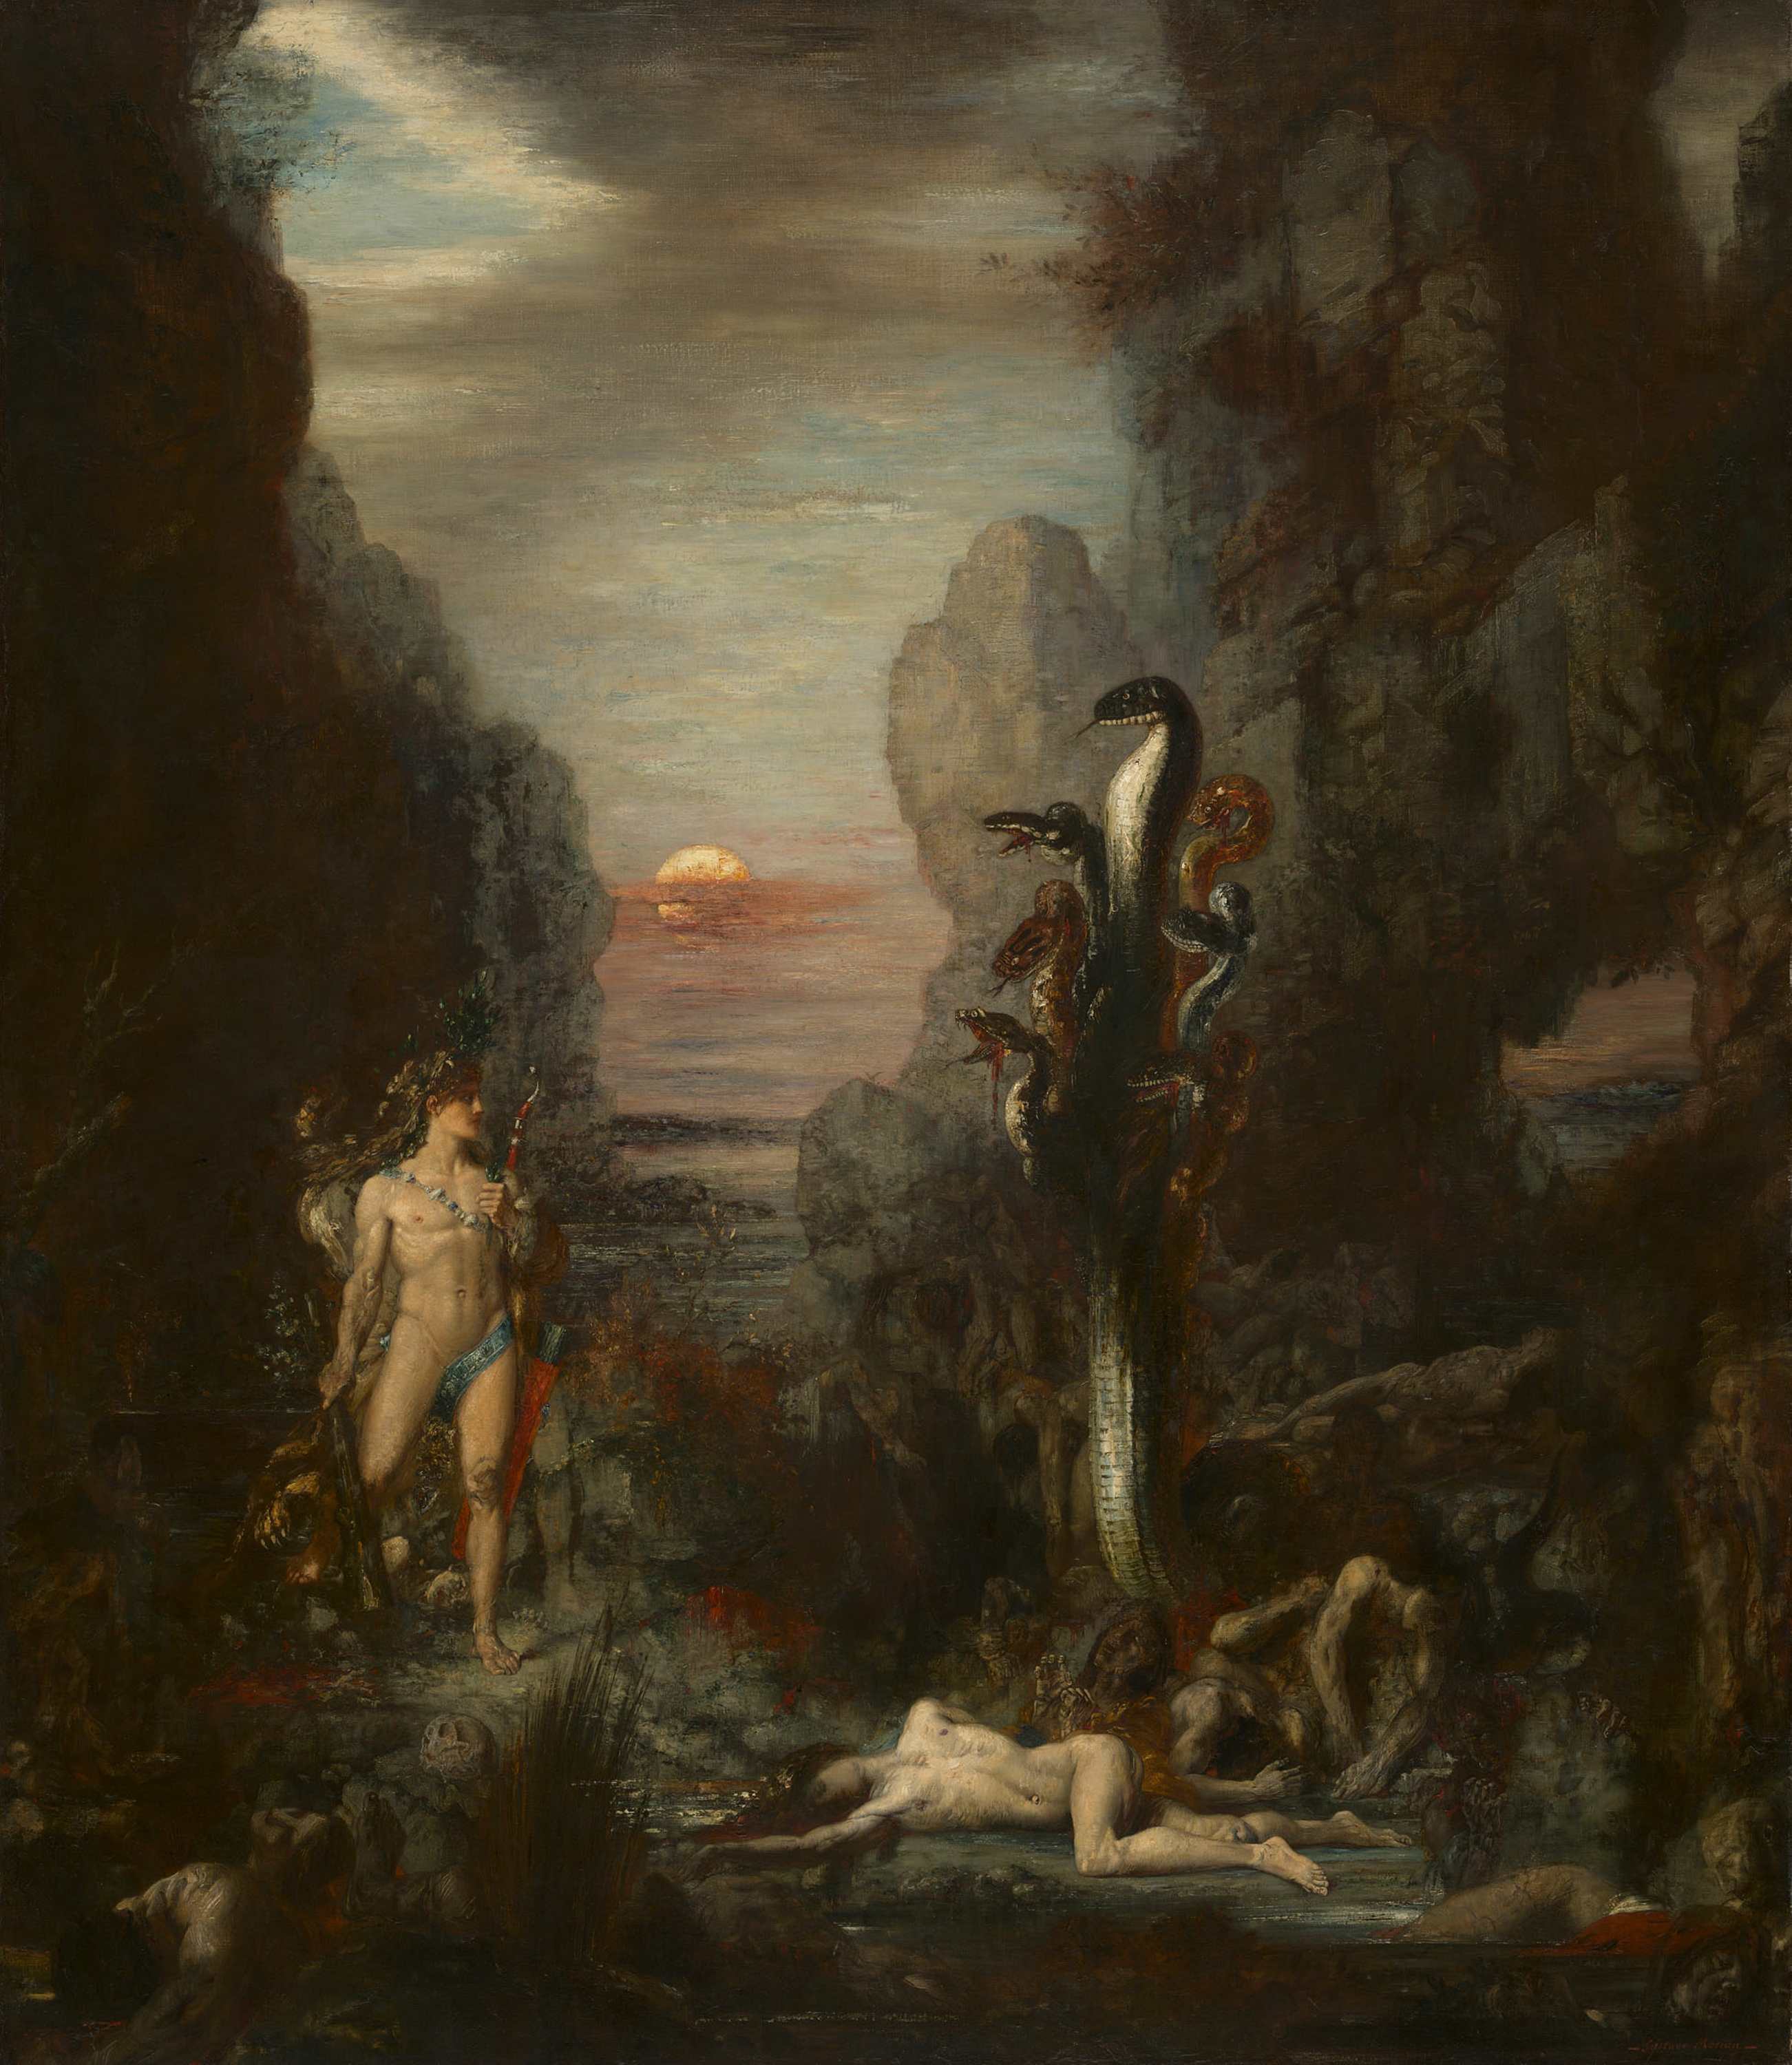 هرقل وعُدار الليرنانيَّة by Gustave Moreau - 1875-76 م - 179.3 سم في 154 سم 